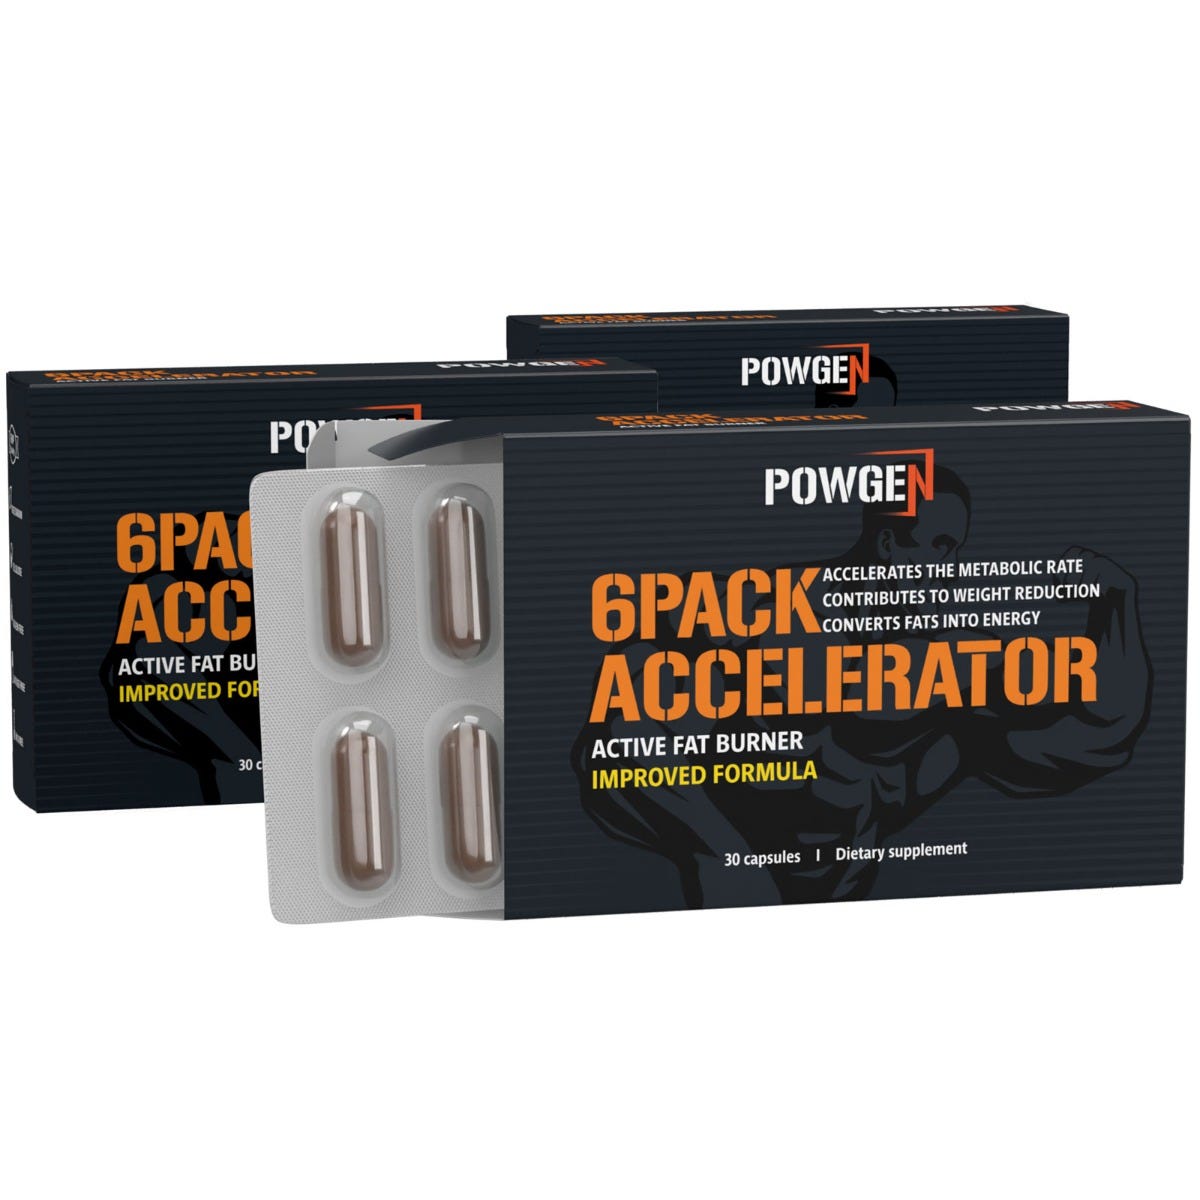 6Pack Accelerator | 1+2 GRATIS | Attacca il grasso addominale con una precisione da raggio laser | 3x 30 capsule | PowGen.